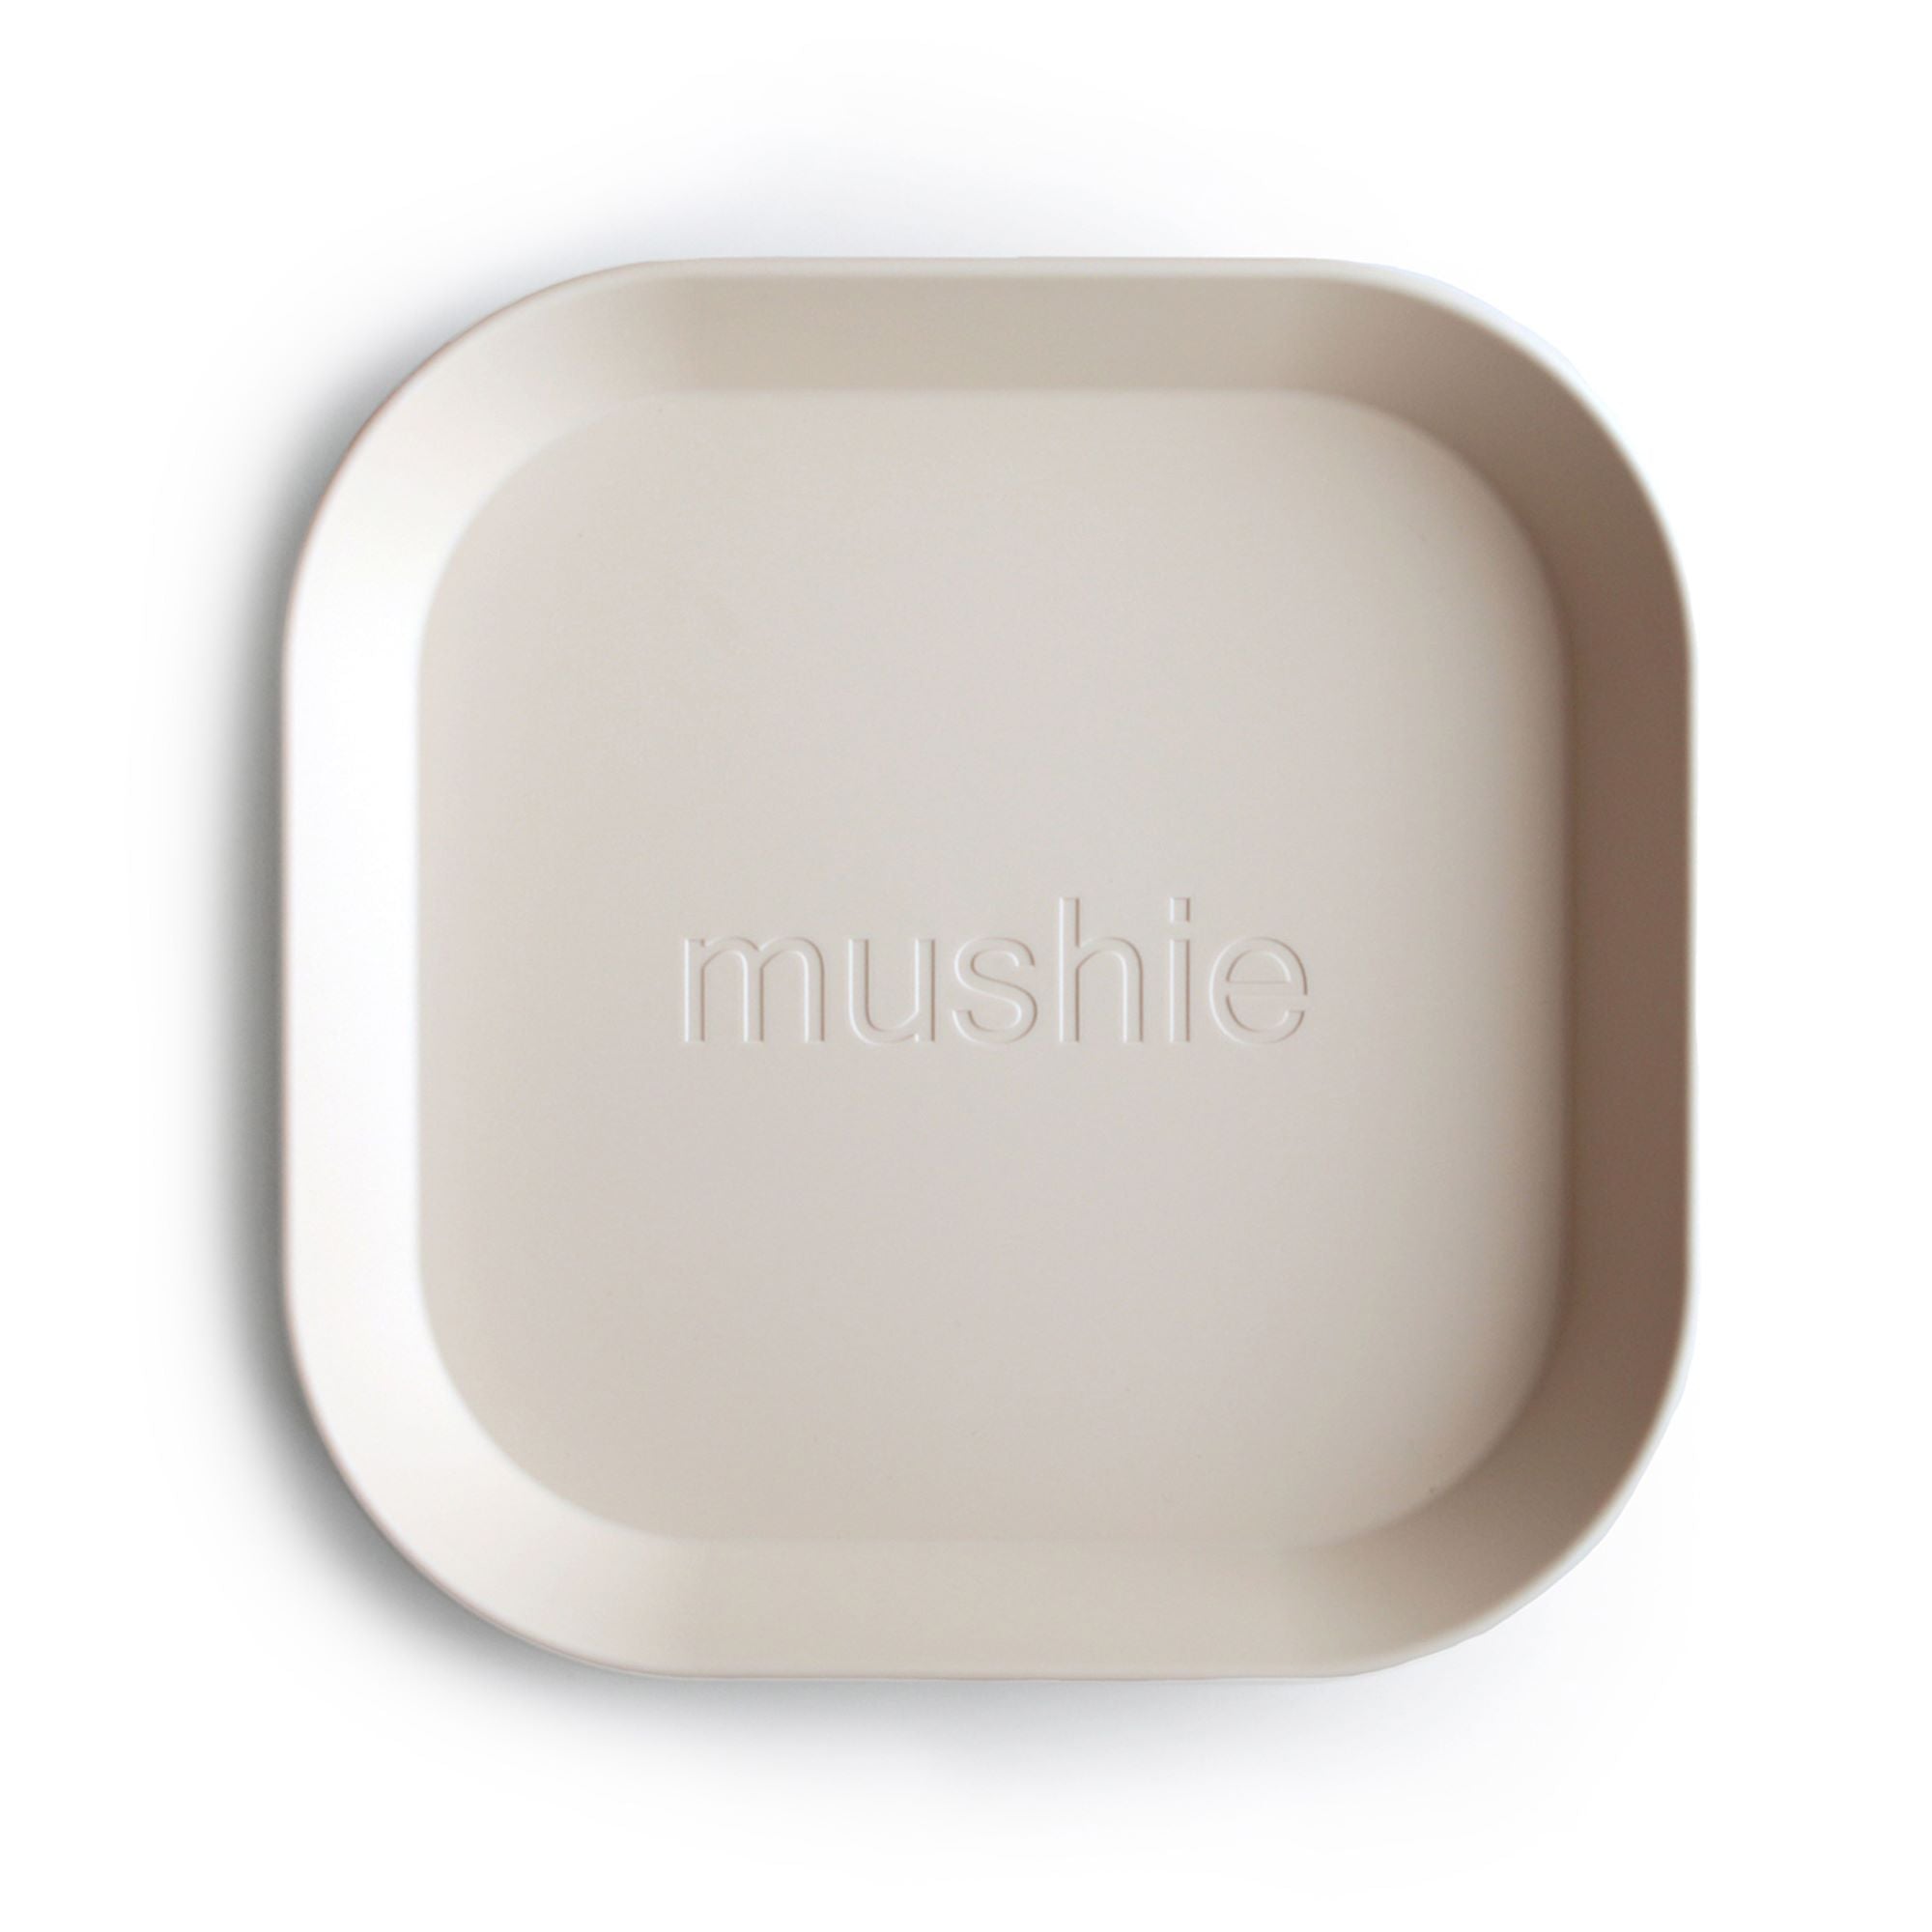 Mushie - Vierkant bord - Ivory (2 stuks)